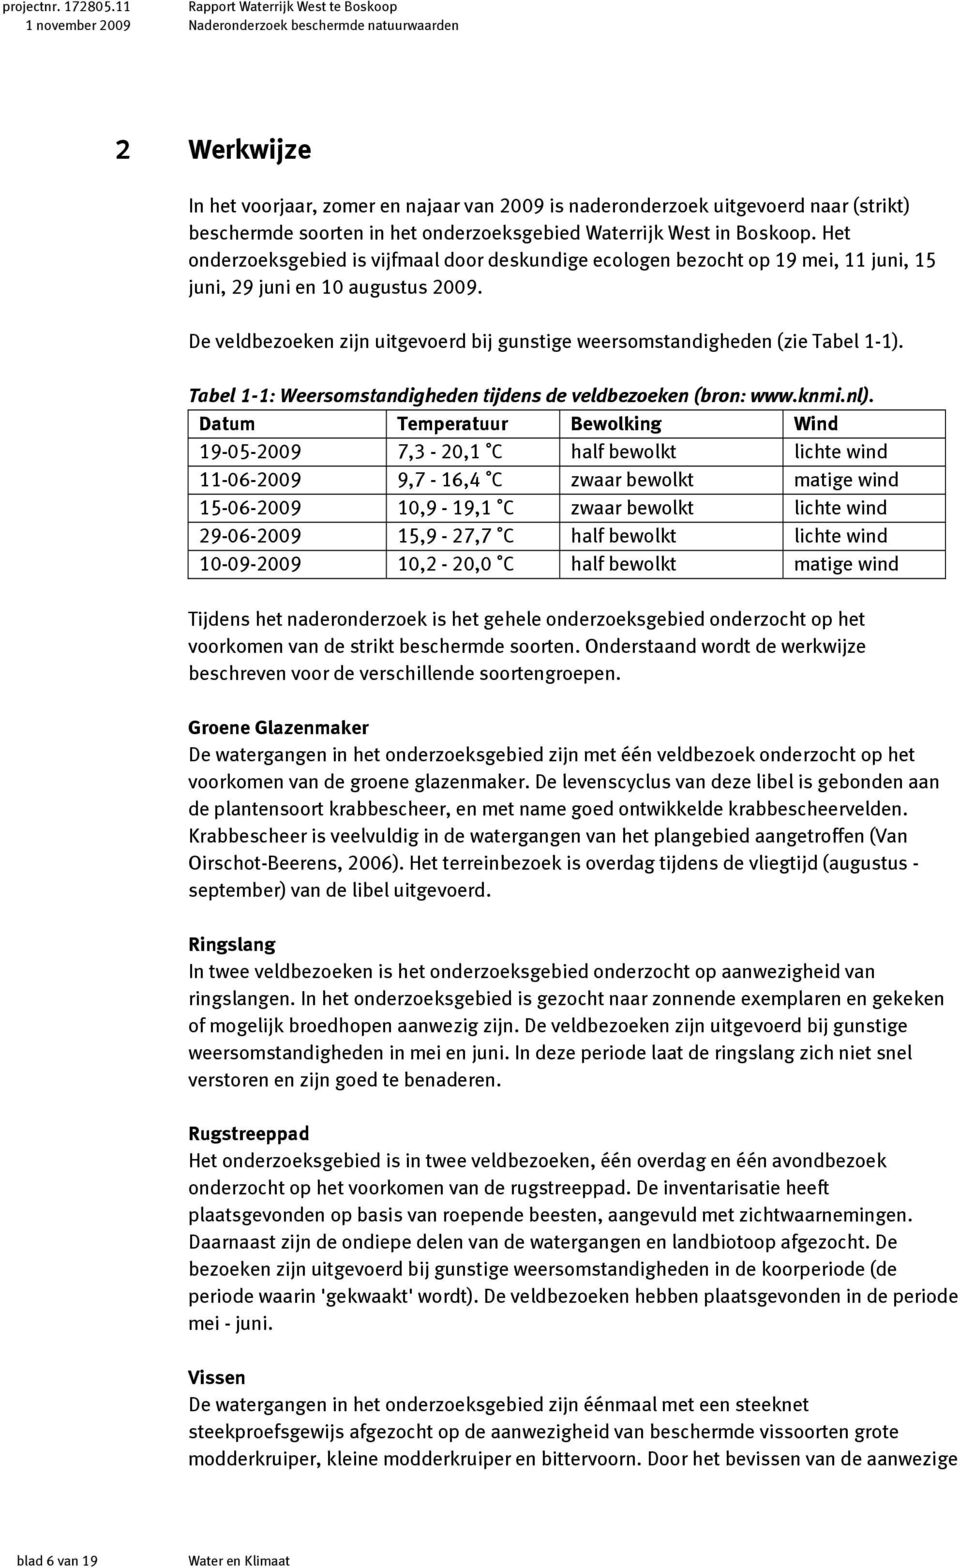 De veldbezoeken zijn uitgevoerd bij gunstige weersomstandigheden (zie Tabel 1-1). Tabel 1-1: Weersomstandigheden tijdens de veldbezoeken (bron: www.knmi.nl).